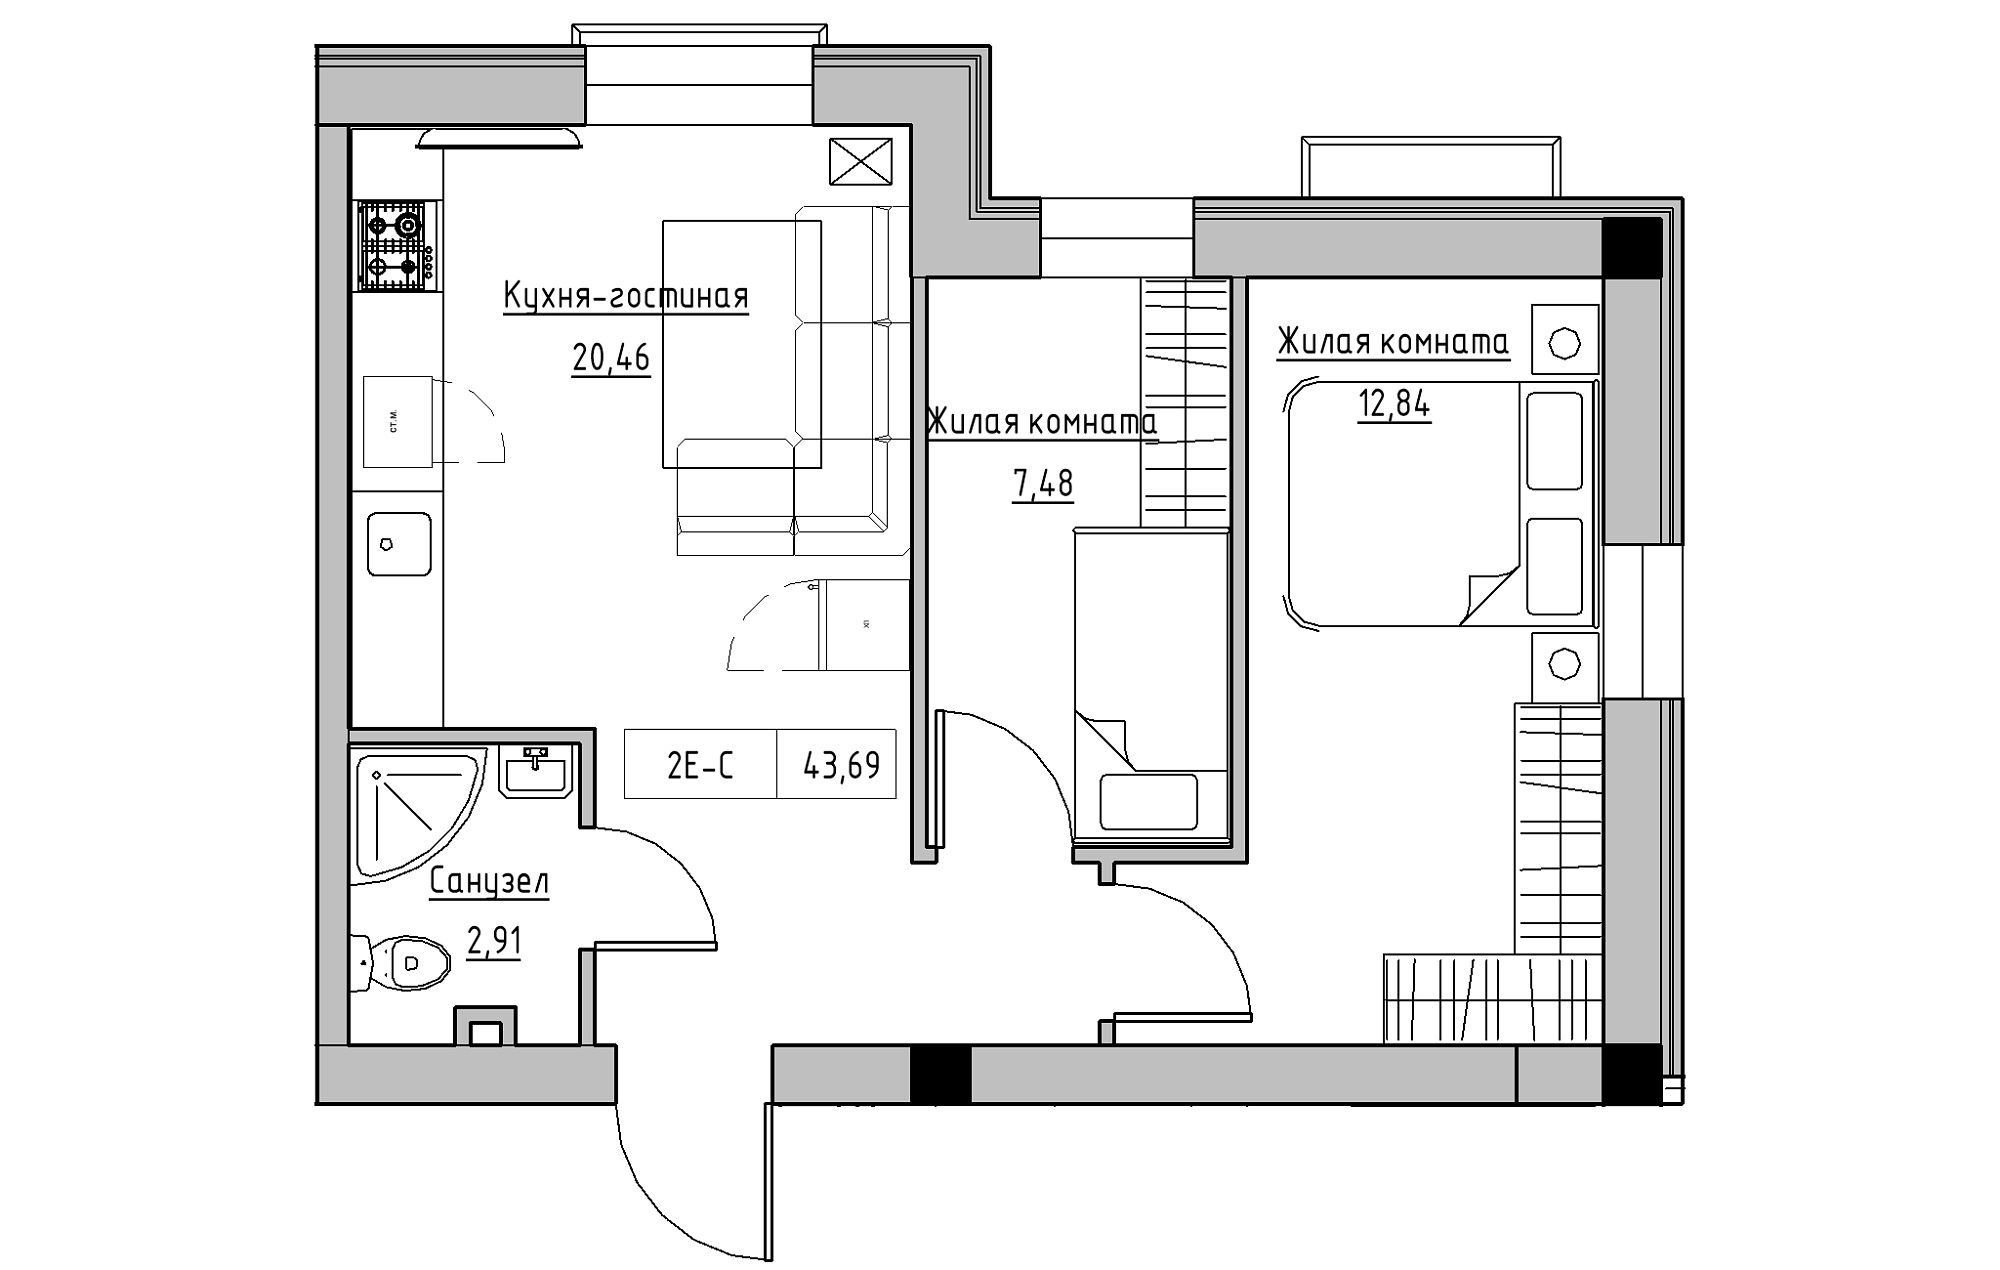 Планування 2-к квартира площею 43.69м2, KS-018-01/0008.